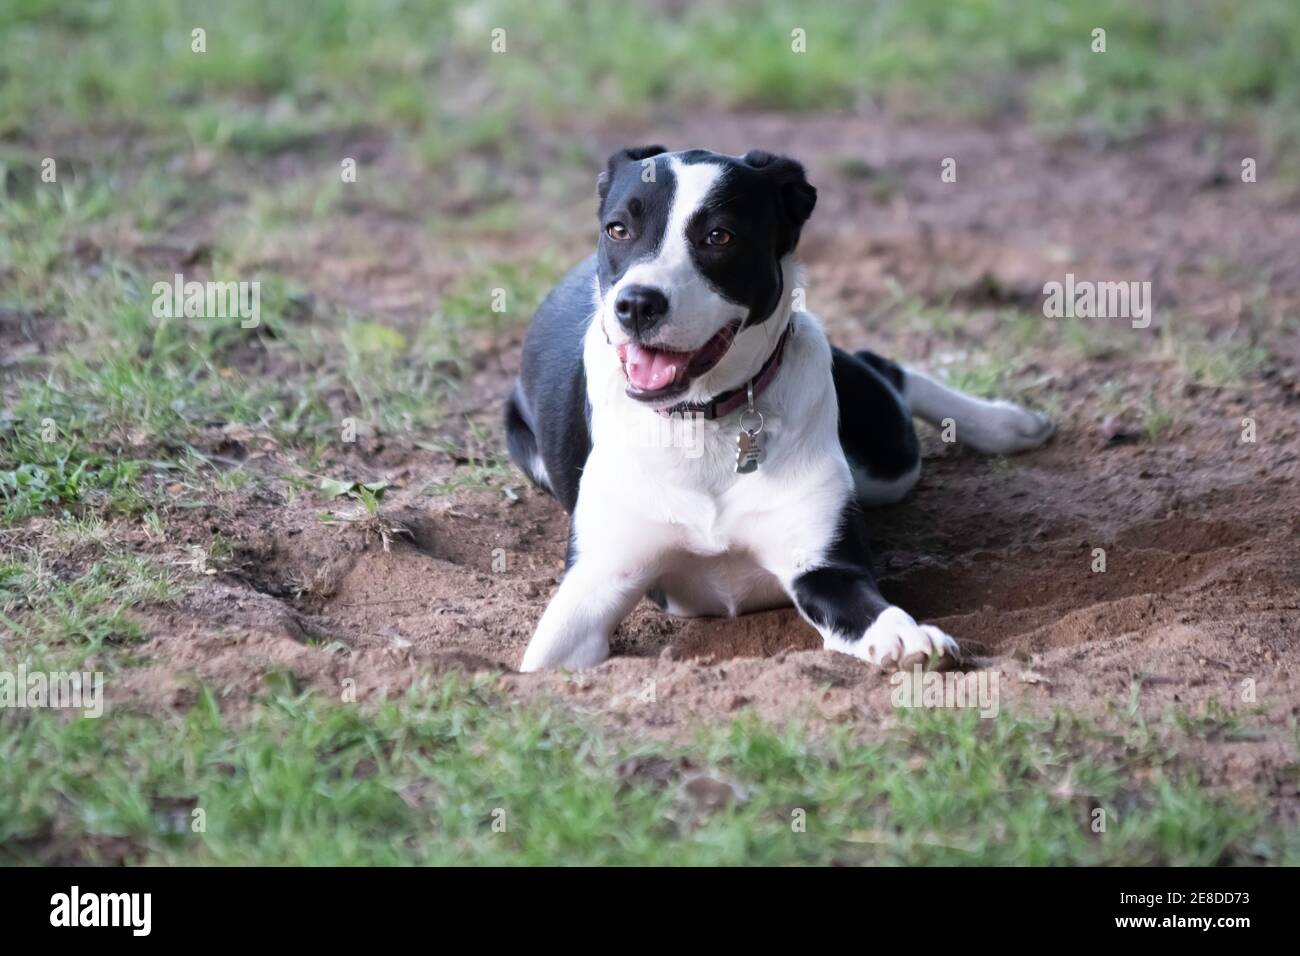 Schwarz und weiß Grenze Collie gekreuzt Hund mit Ohren fixiert Zurück auf die Kamera schauen, während sie in einem Loch liegt Es hat gerade in den Hof mit verschwommen gegraben Stockfoto